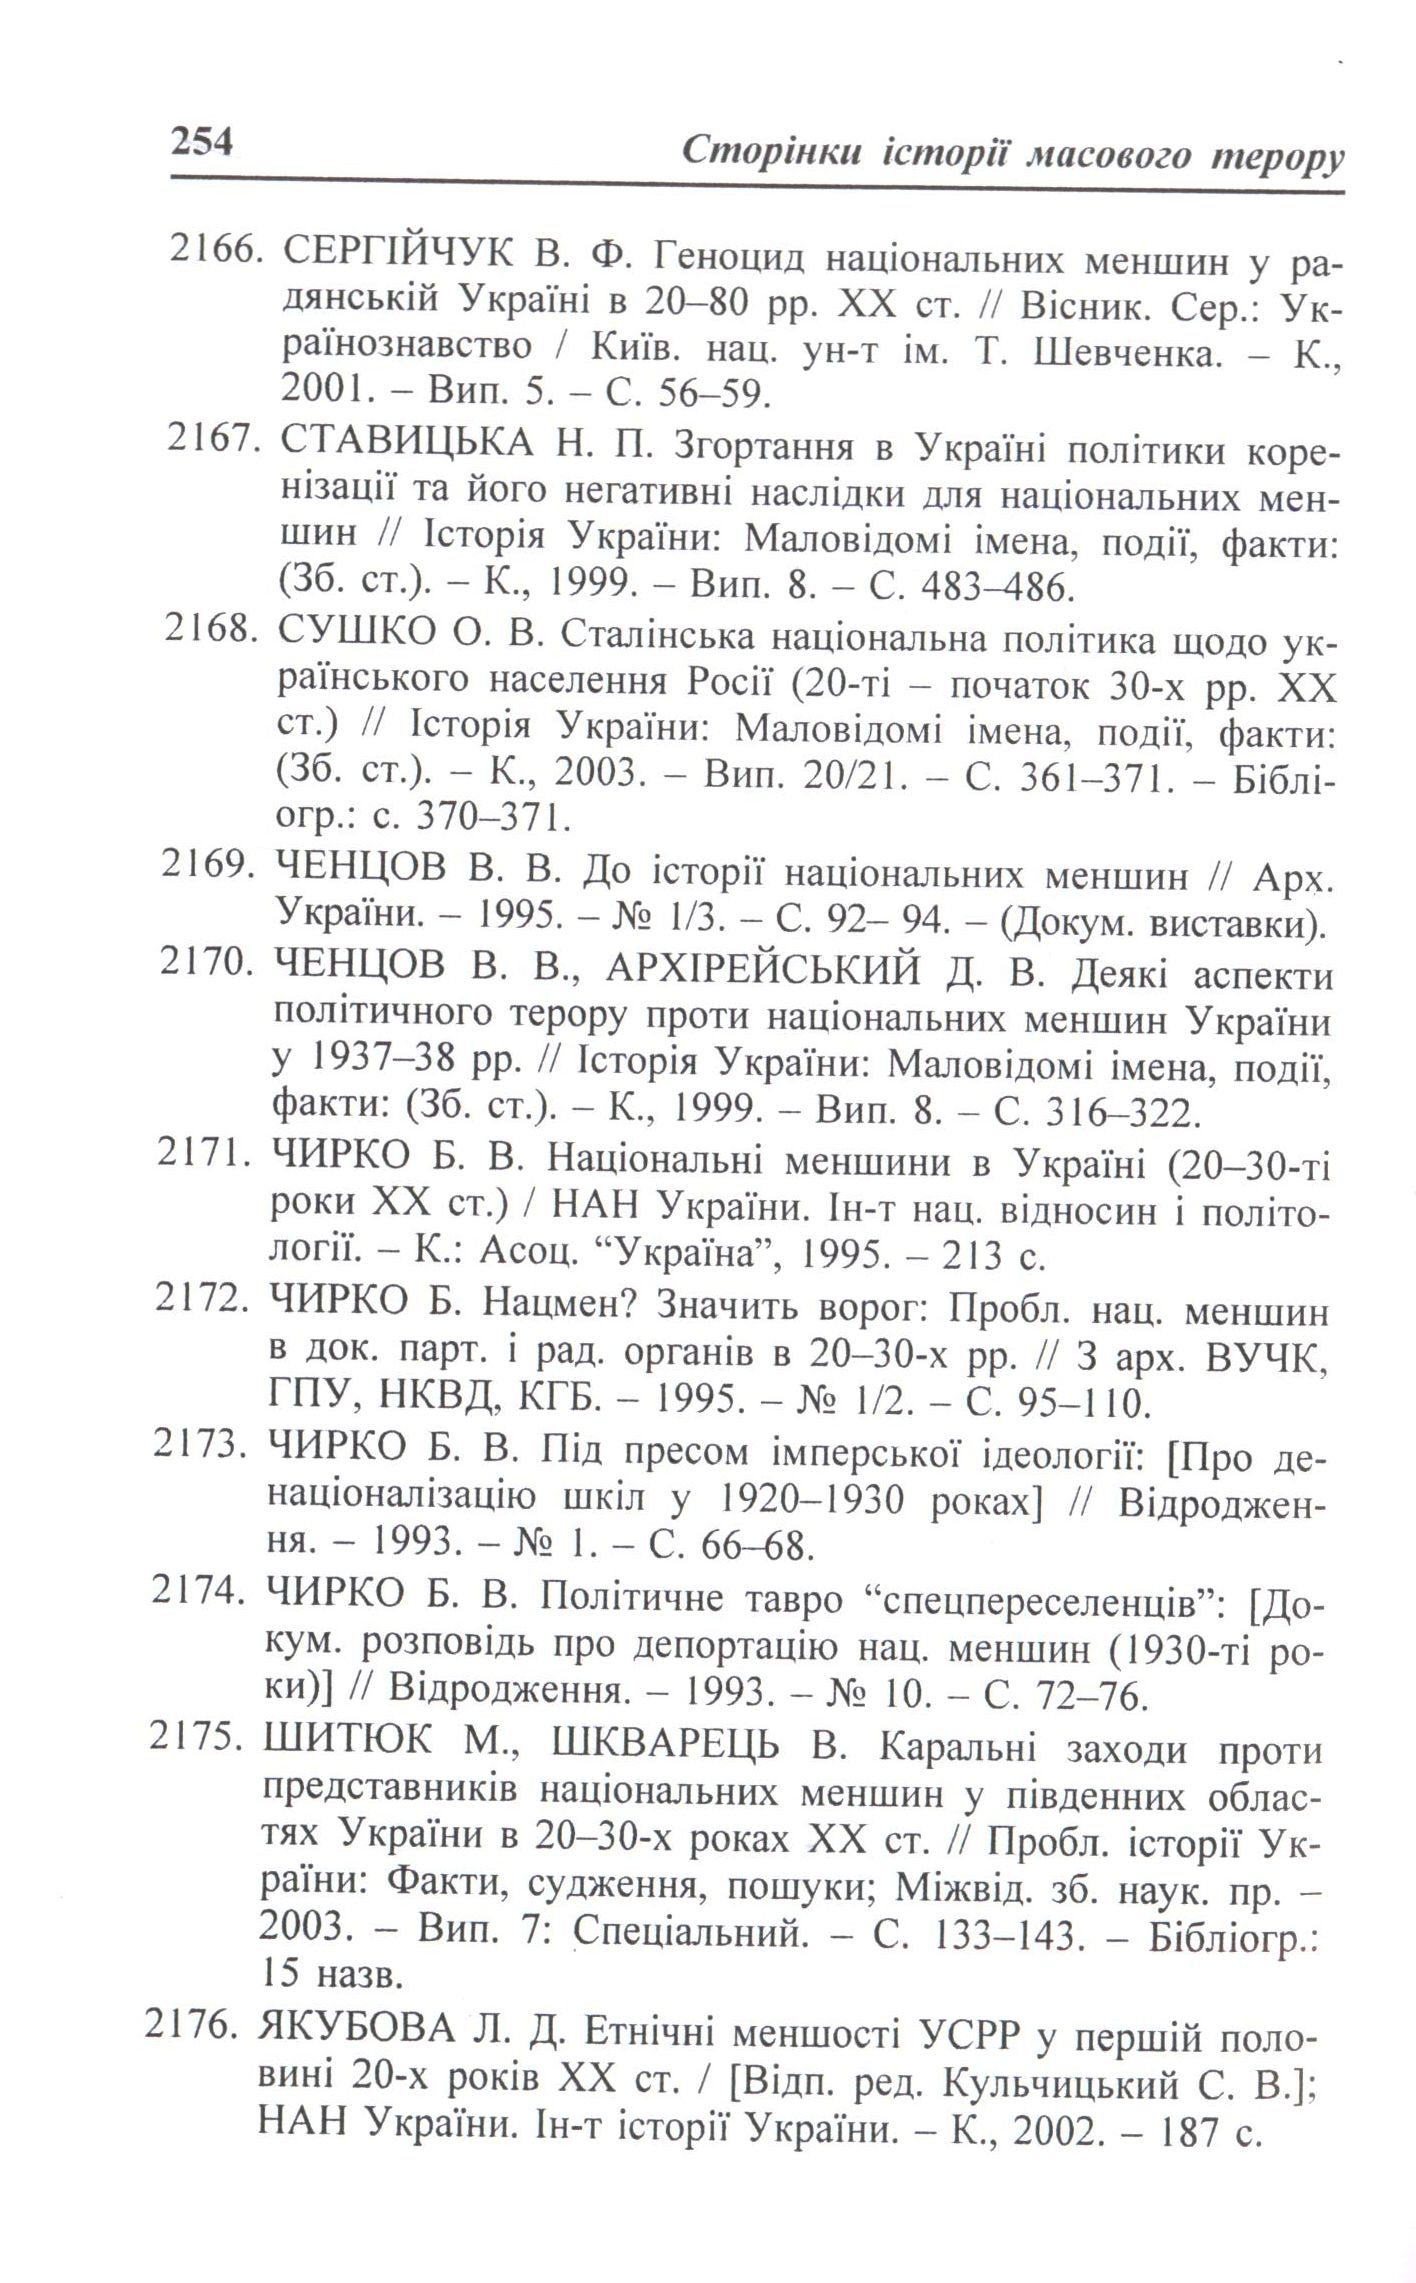 Репресії в Україні (1917-1990)